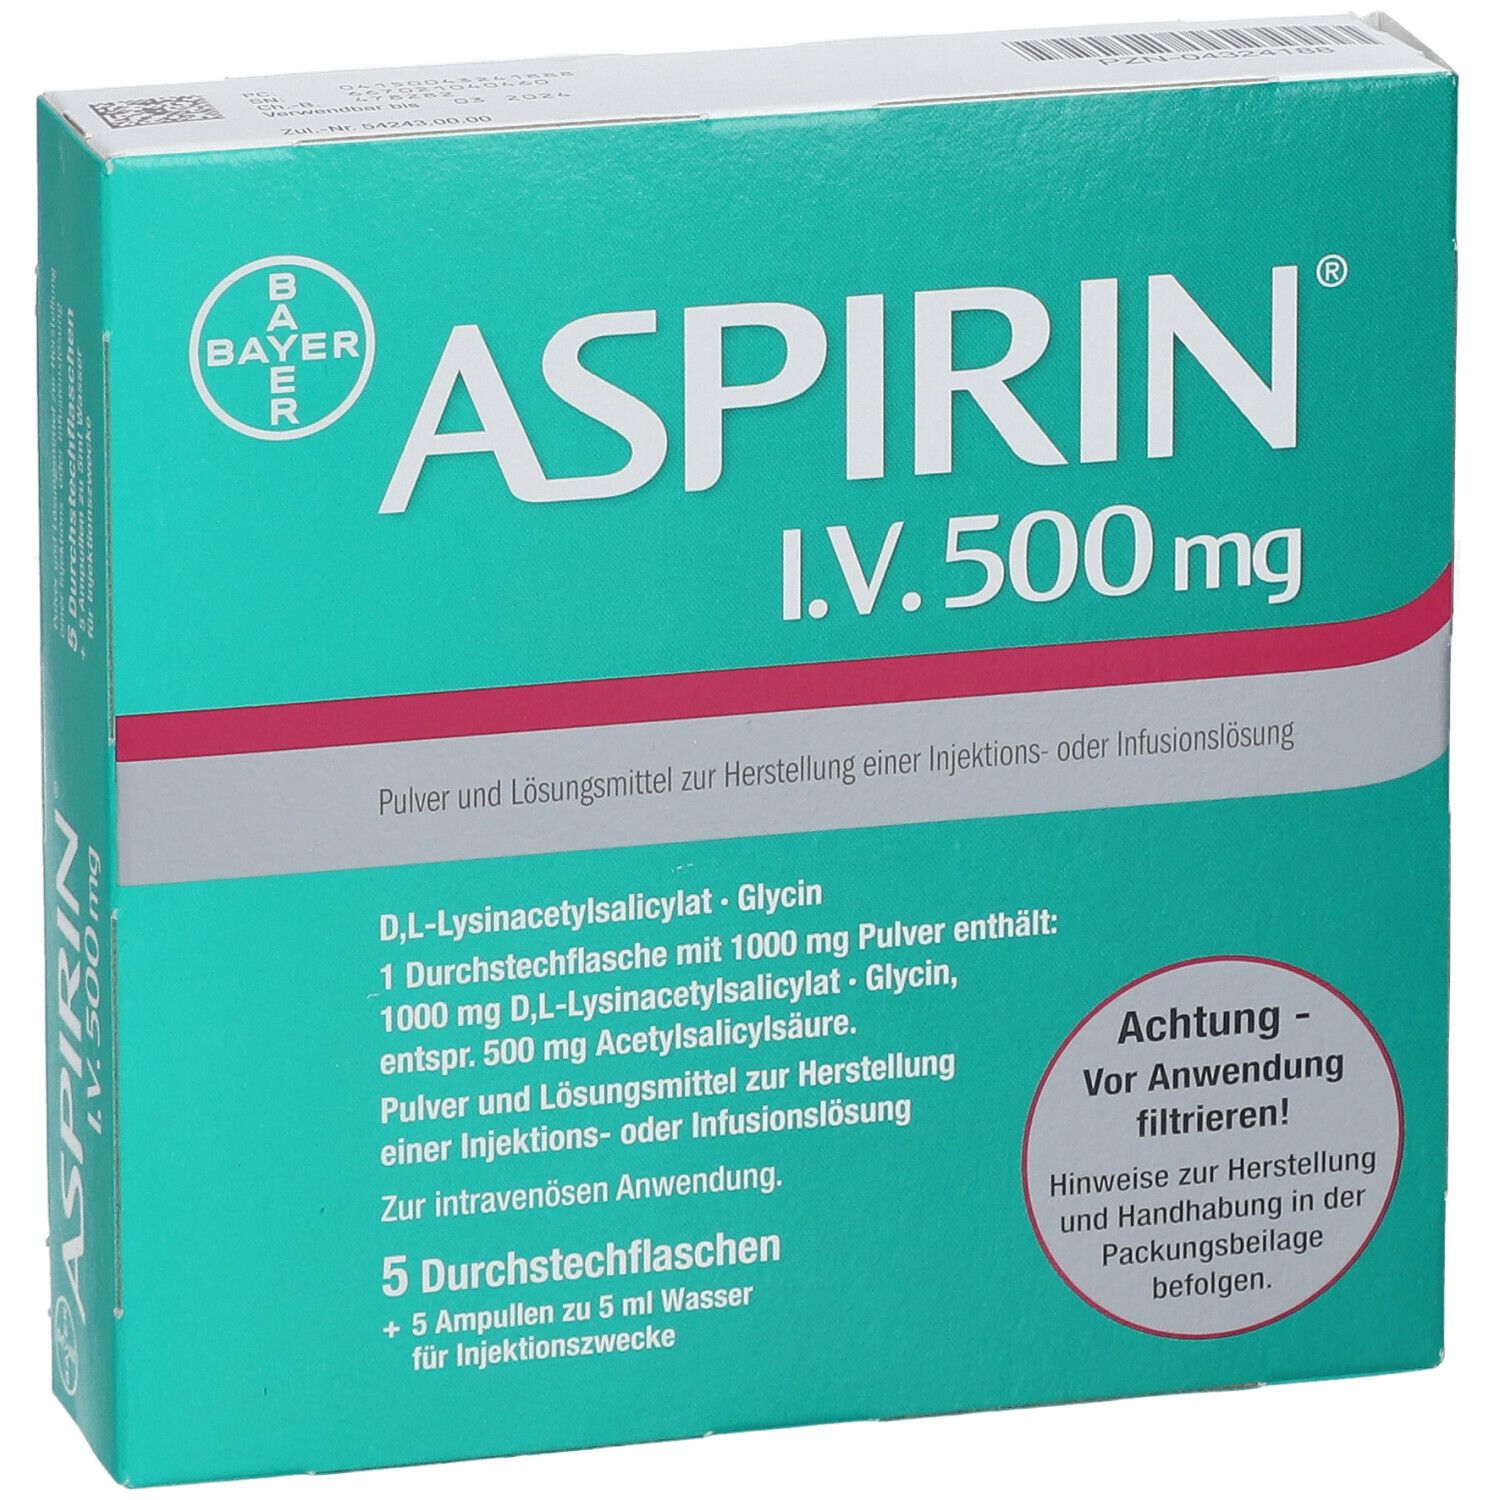 ASPIRIN® I.V. 500 mg